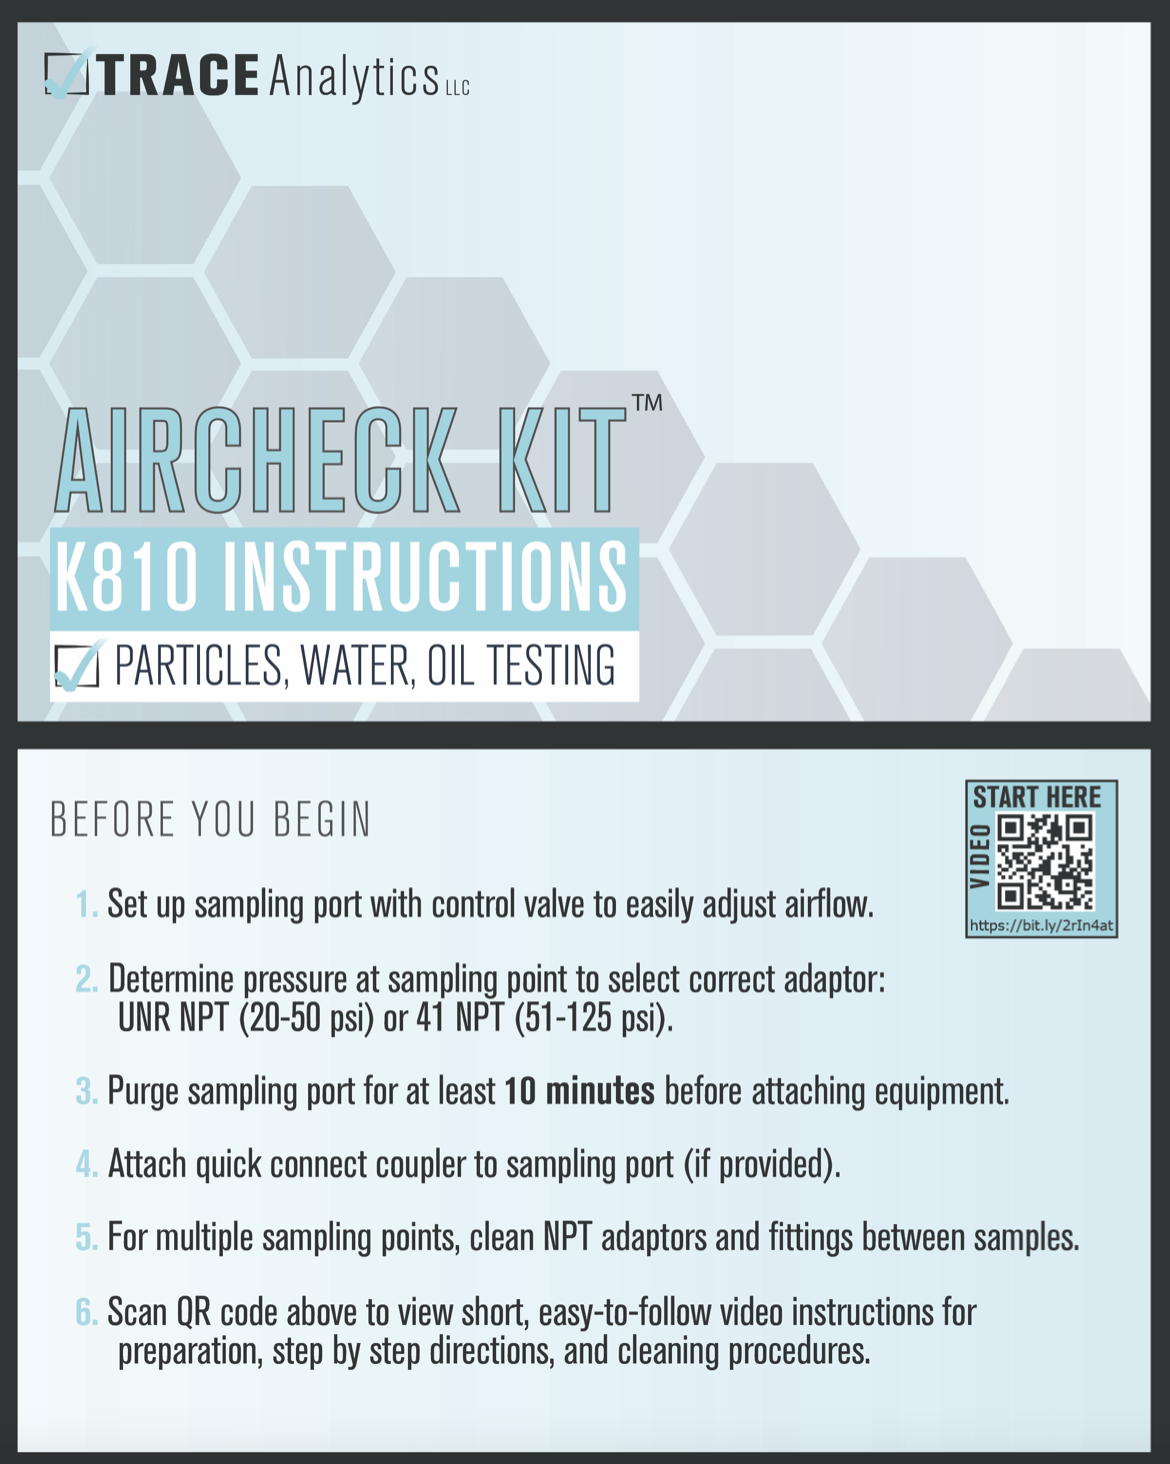 AirCheck ™ Kit K810 Manual - Trace Analytics, the AirCheck Lab